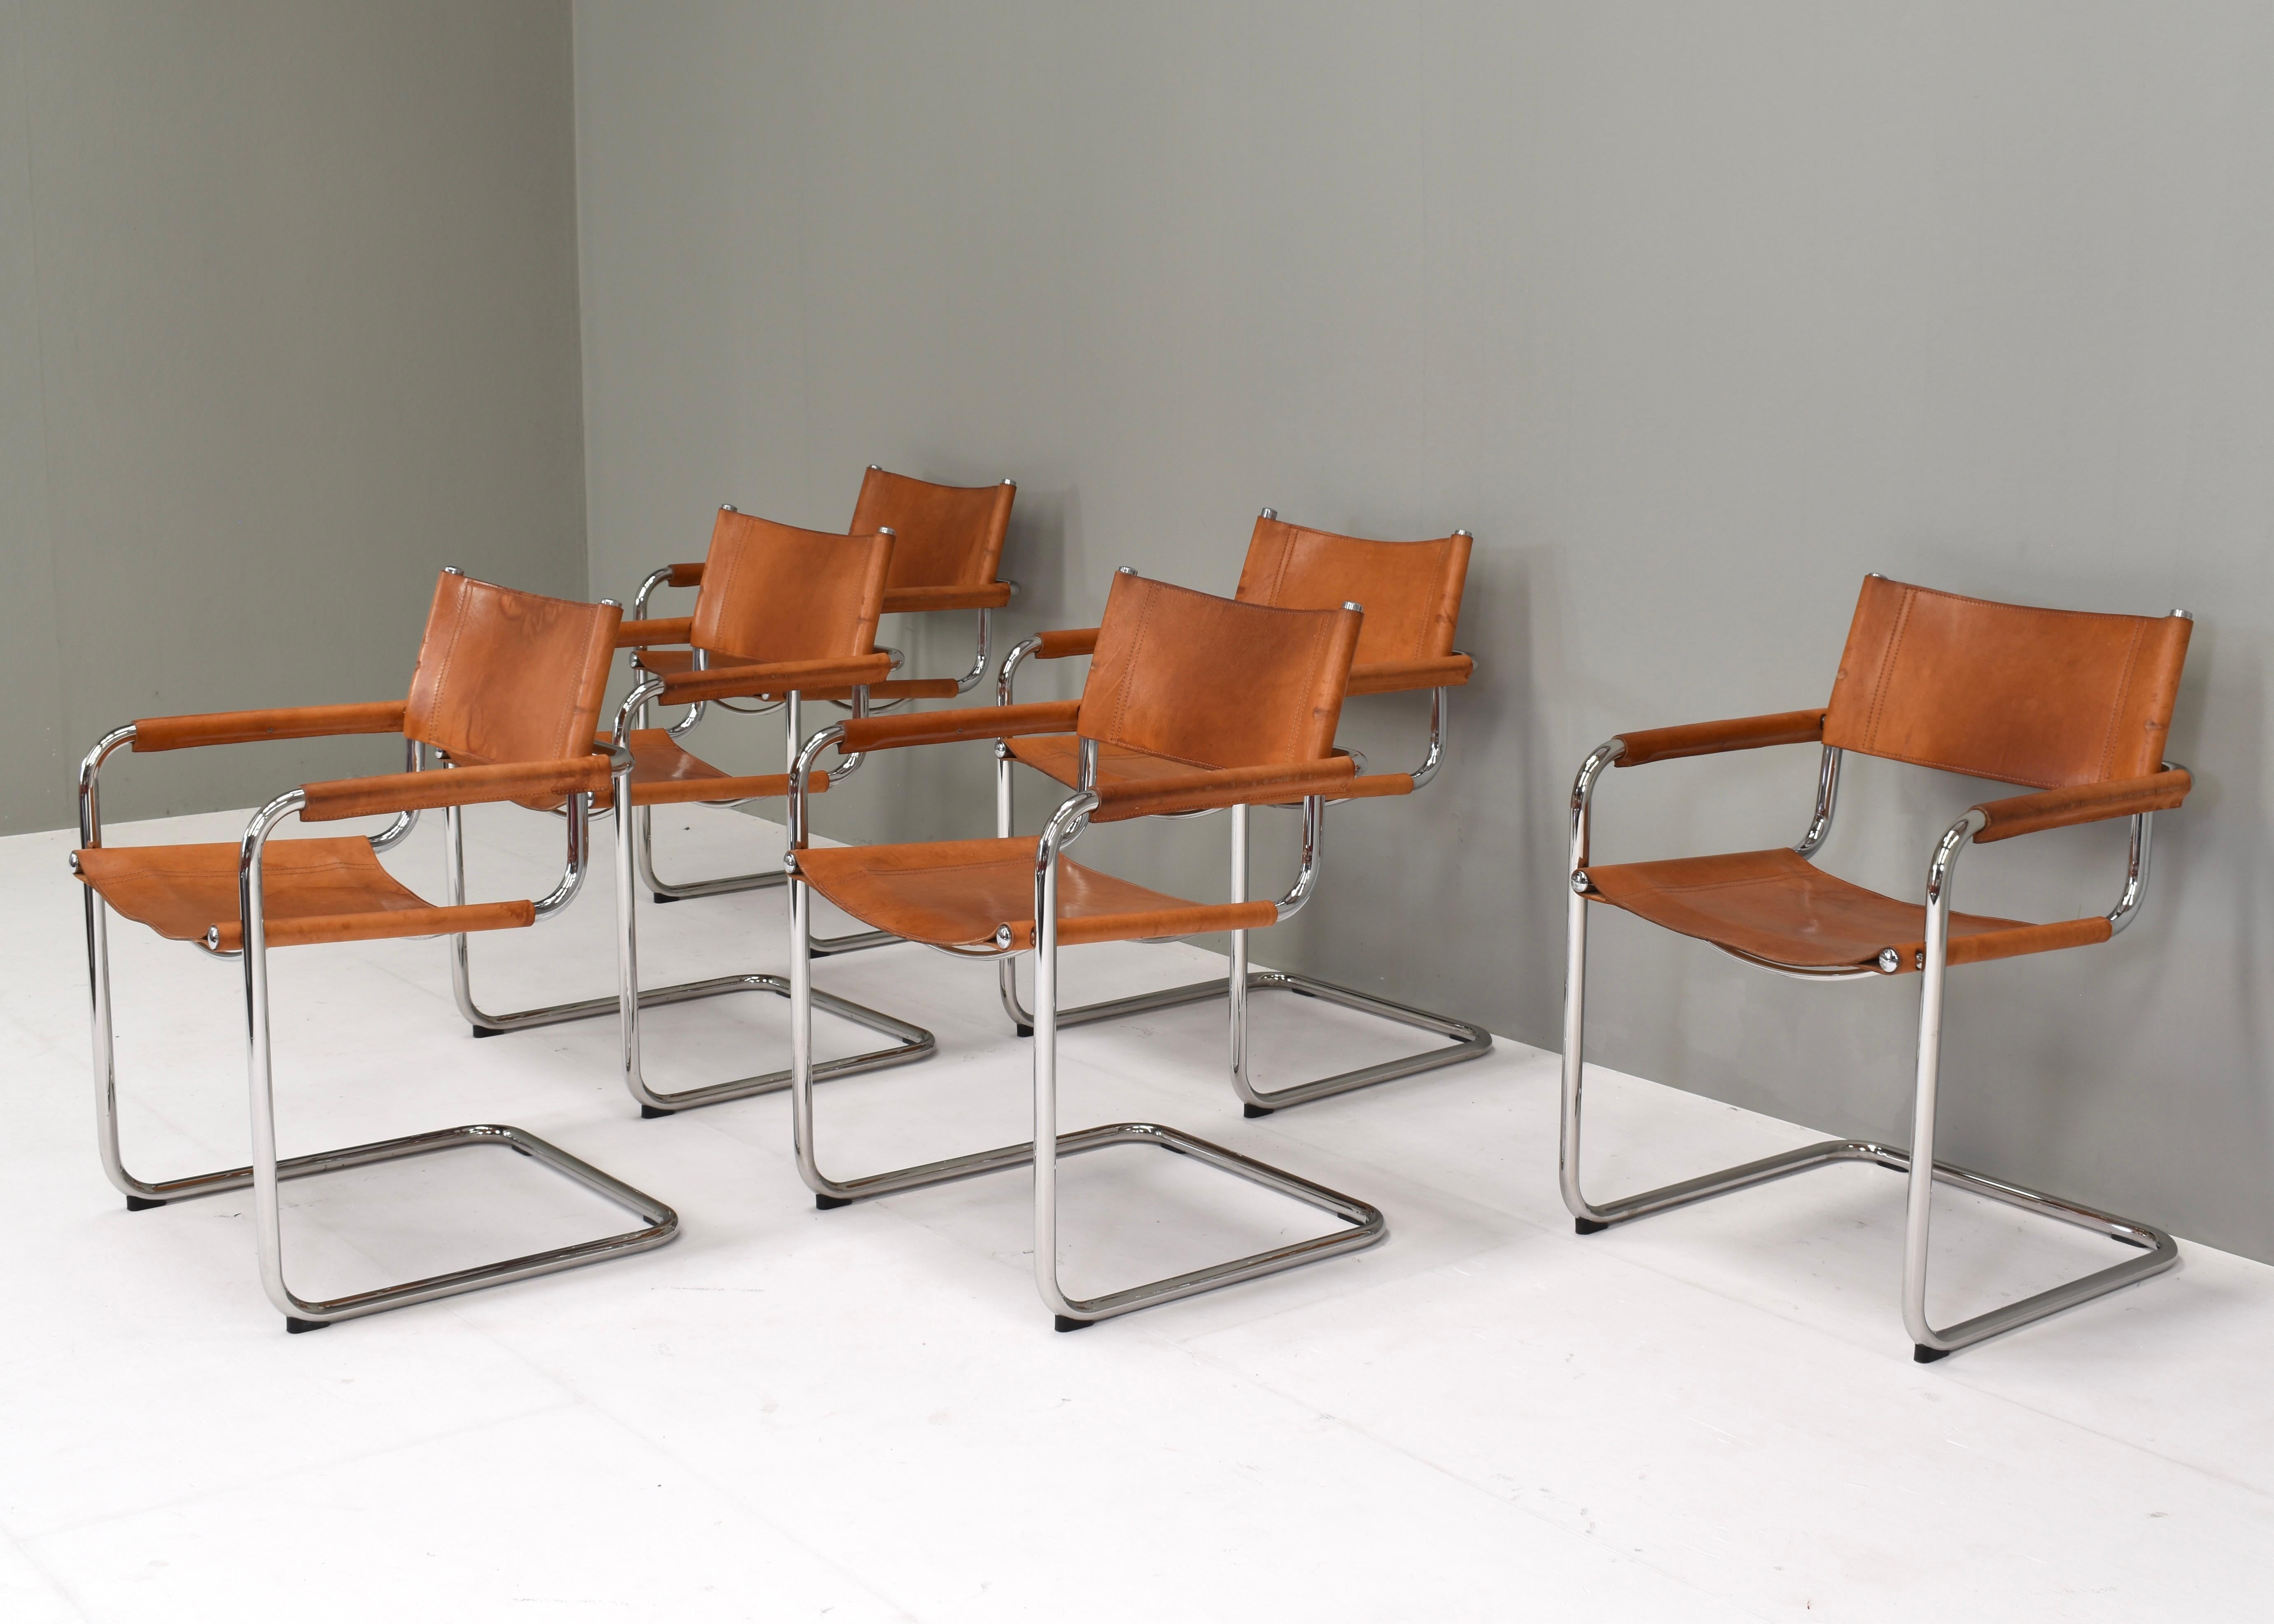 Ensemble de six fauteuils de salle à manger CIRCA S34 très confortables par FASEM - Italie, vers 1960. Rarement trouvé dans un ensemble de 6 avec le cuir de selle d'origine.
Le cuir a une belle couleur cognac tan avec une patine qui ne vient qu'avec